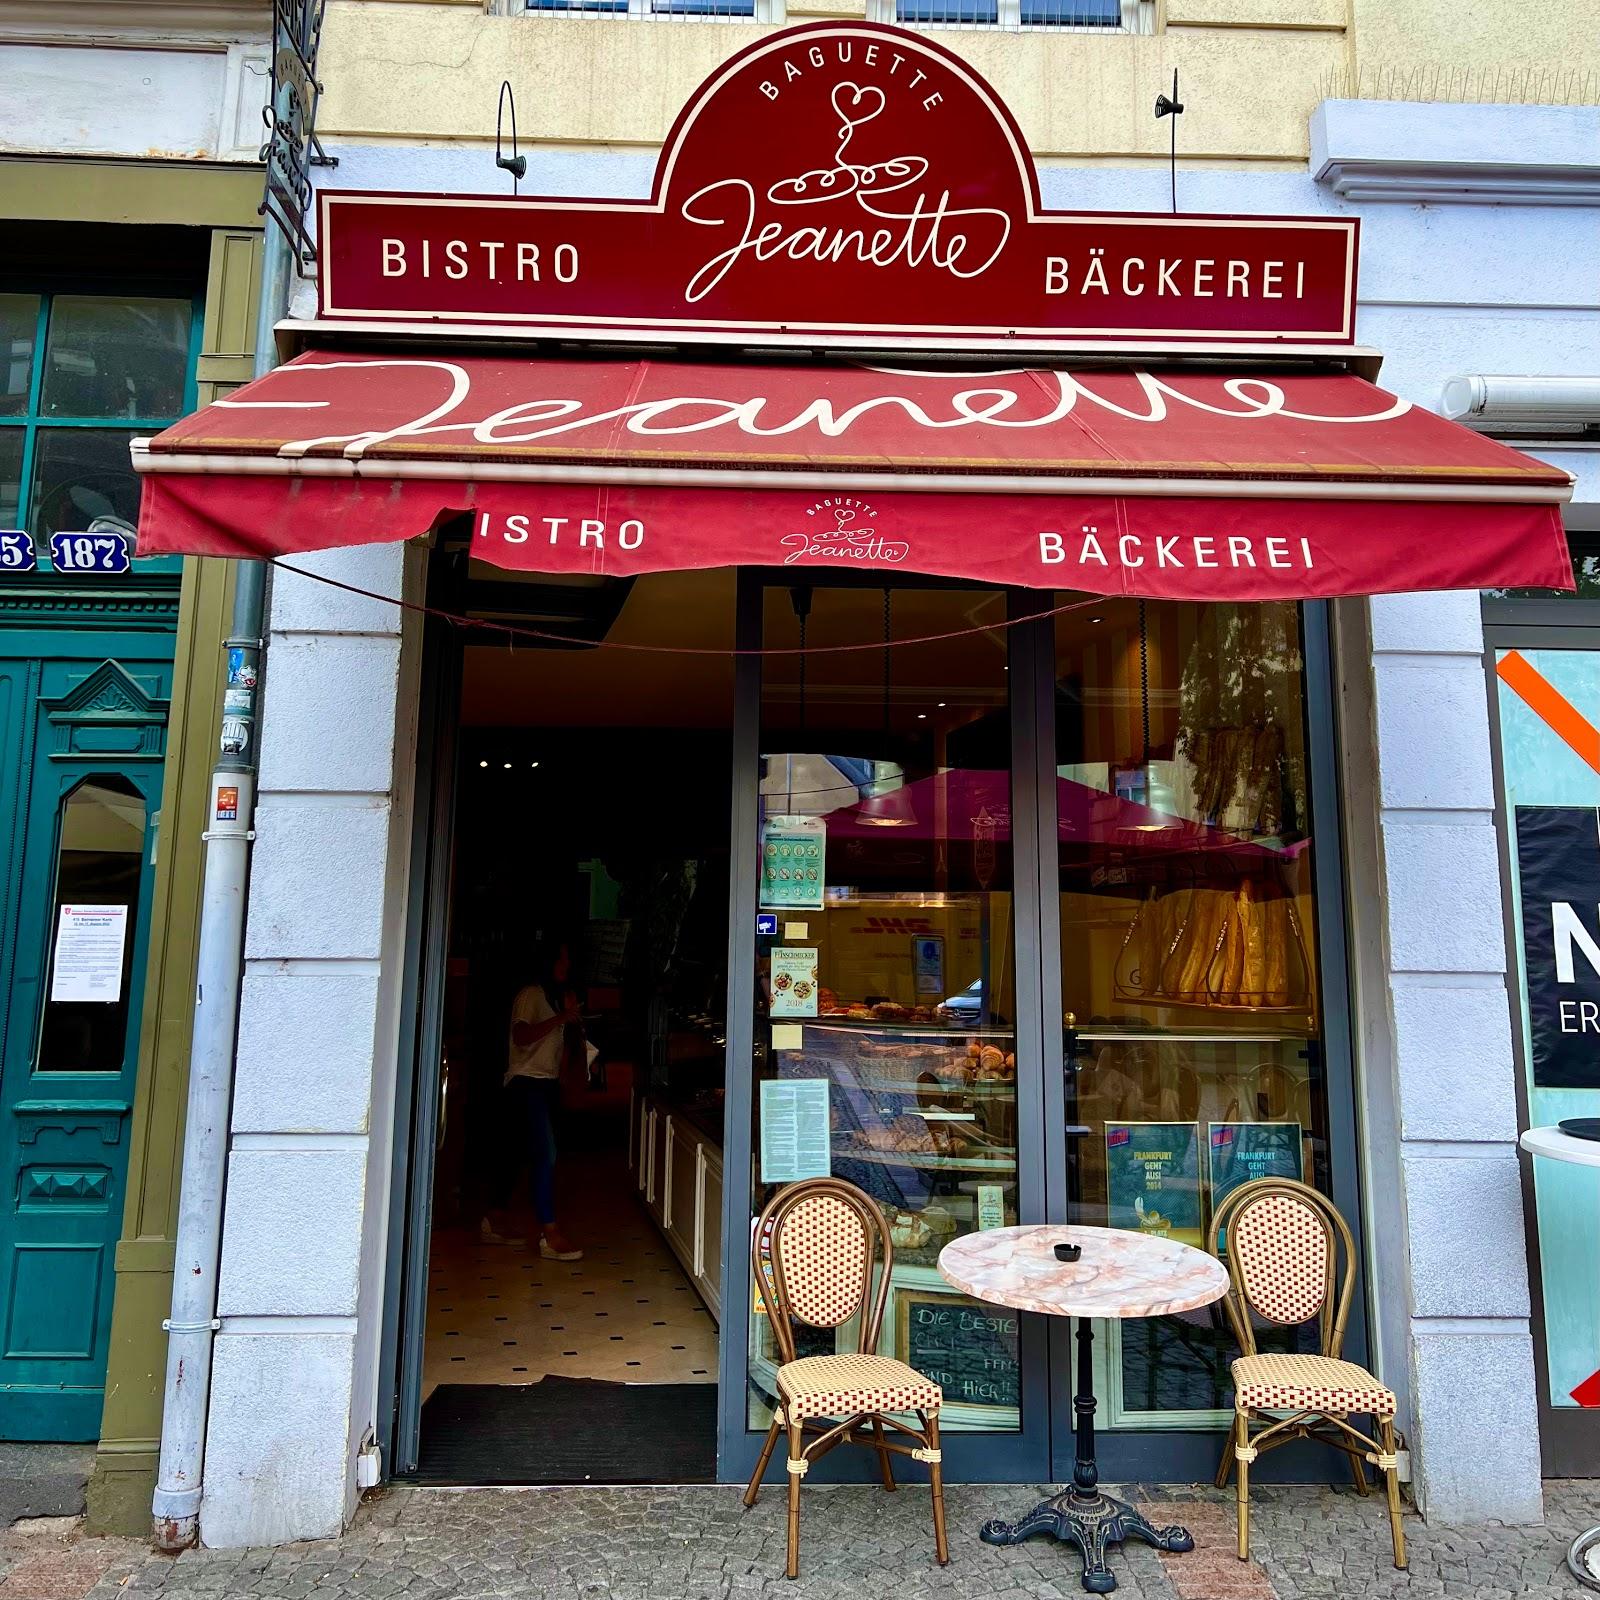 Restaurant "Baguette Jeanette" in Frankfurt am Main